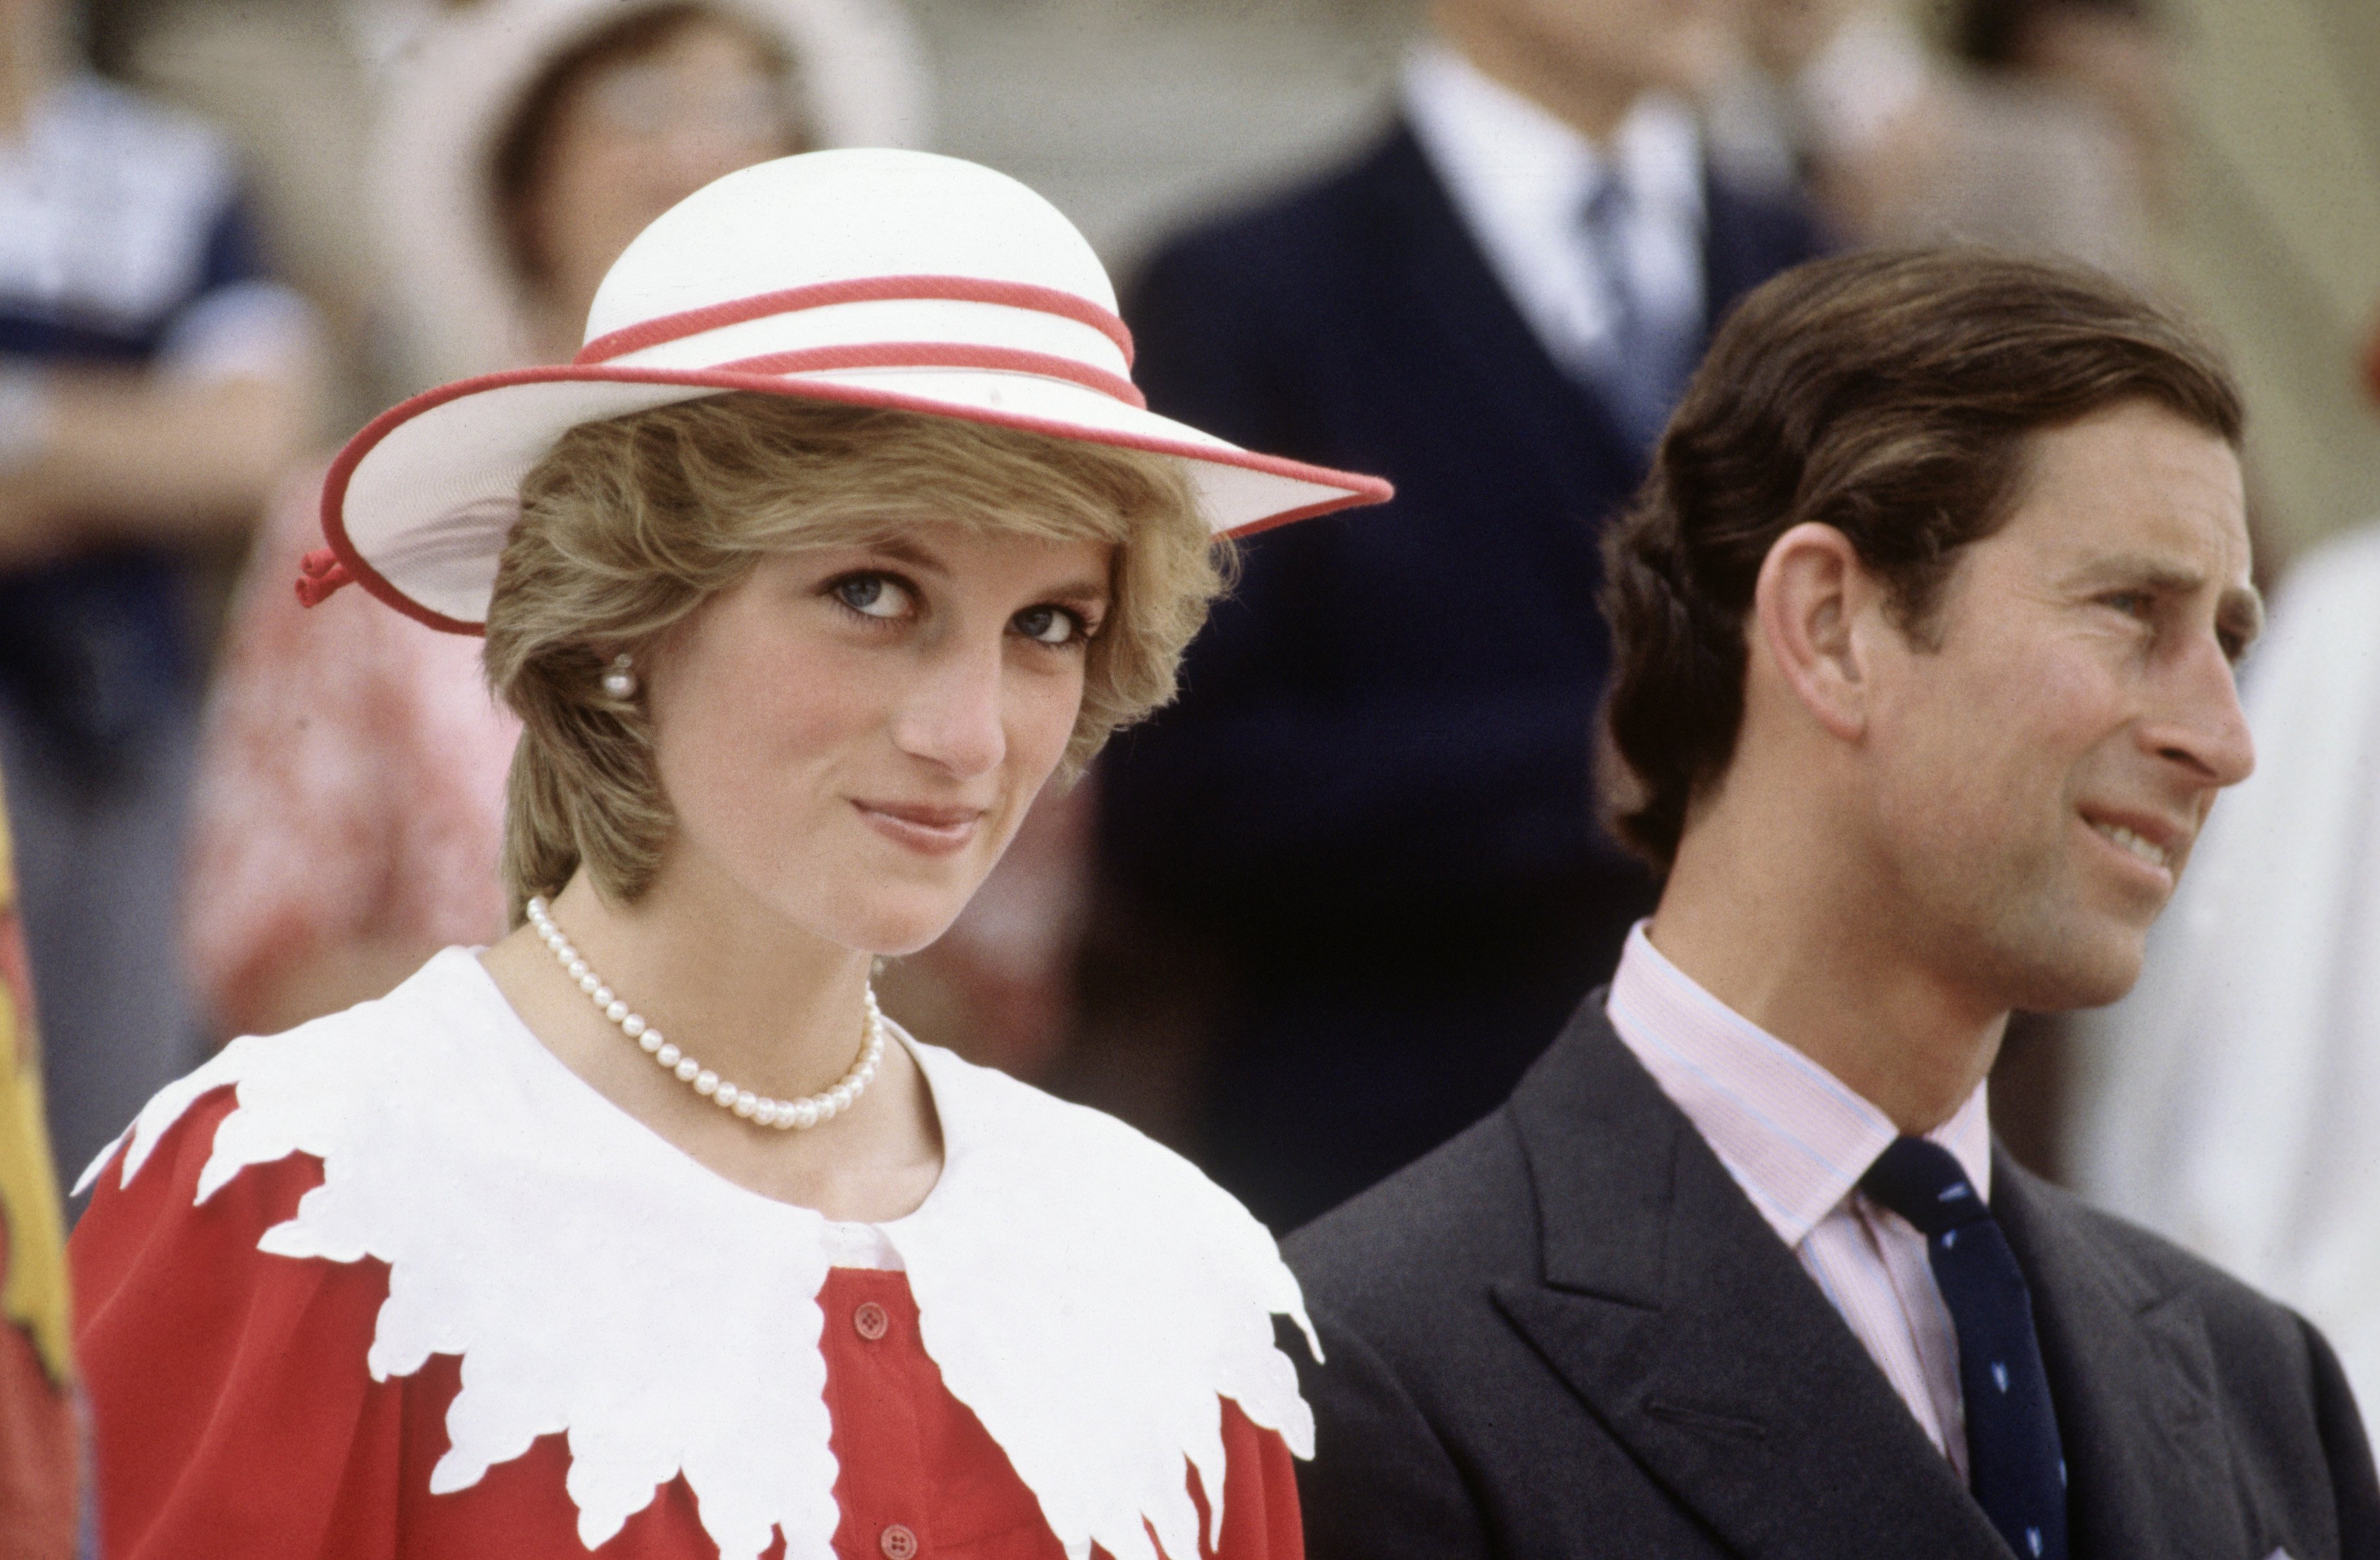 Diana Princesse de Galles et Prince Charles lors de la visite royale du Canada le 29 juin 1983 à Edmonton, Alberta, Canada. | Source: Getty Images.